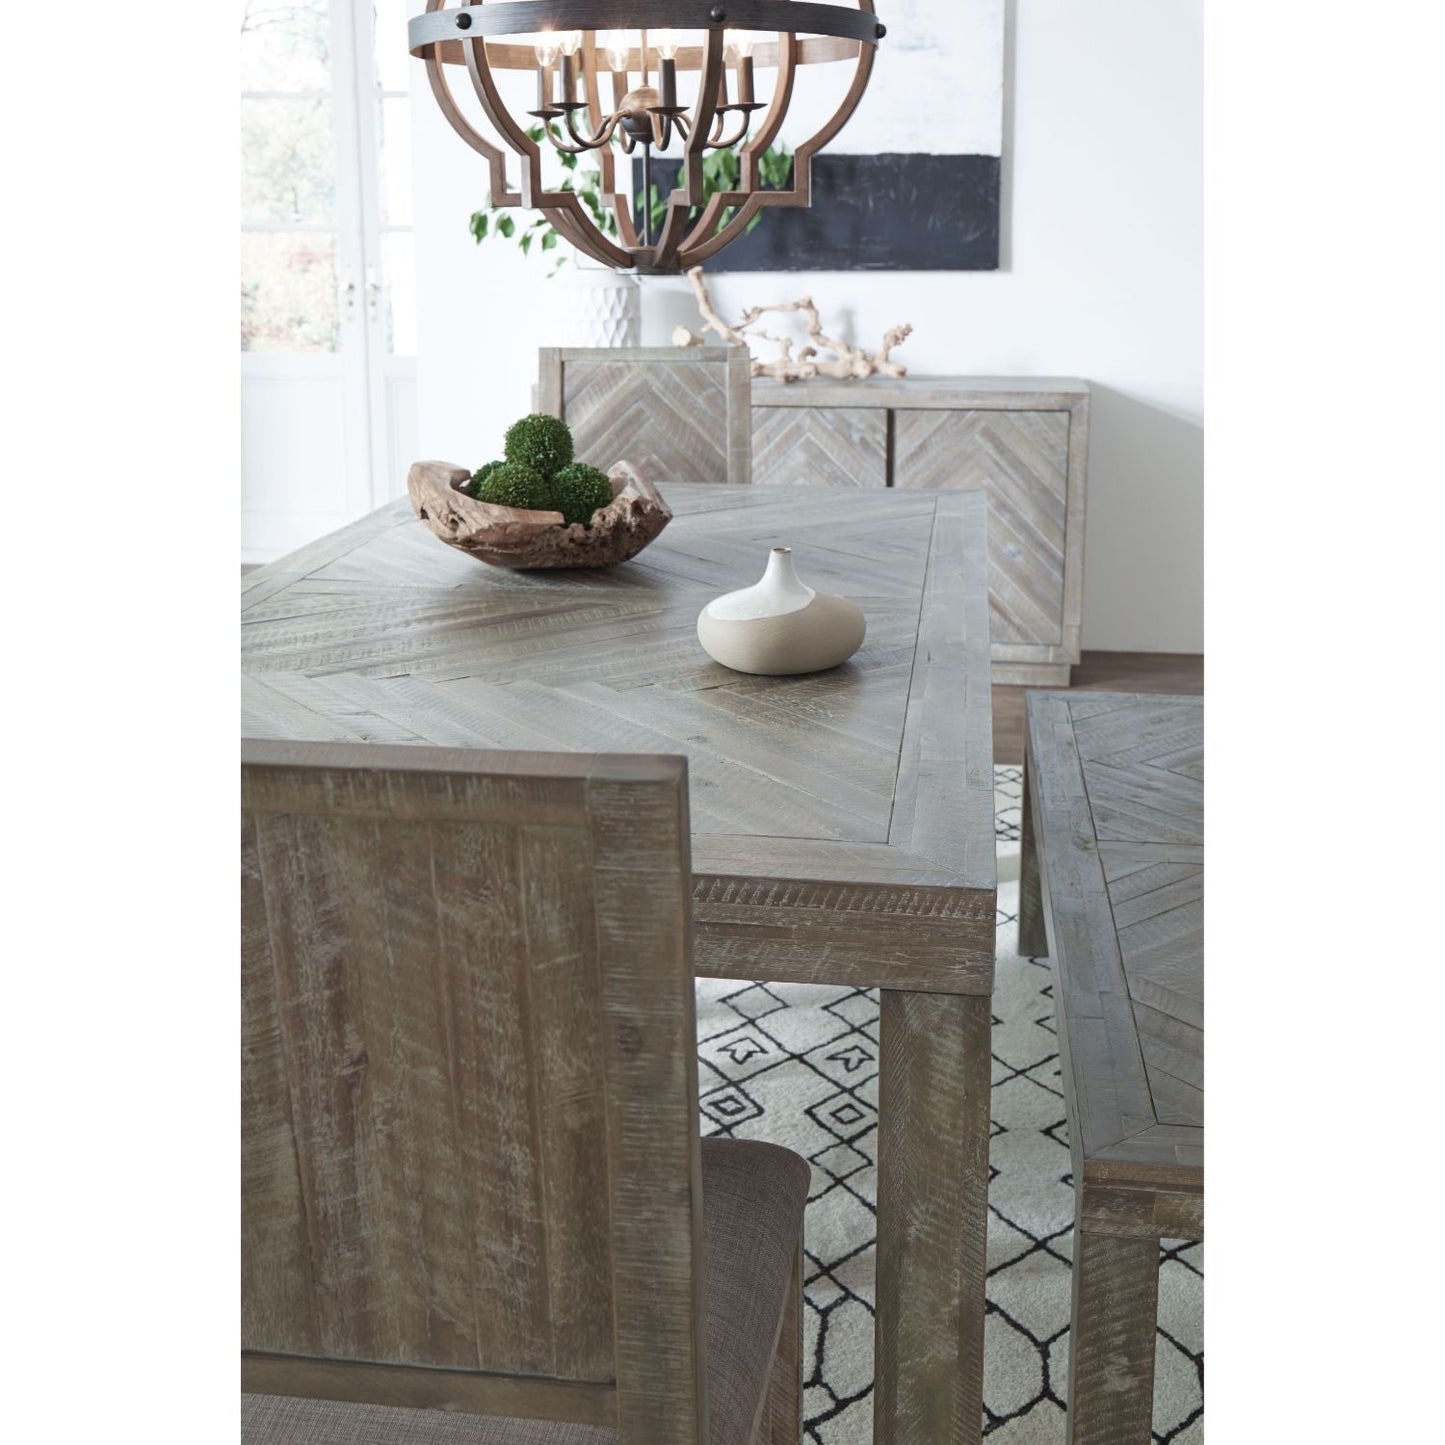 Modus Herringbone Rectangular Dining Table in Rustic Latte